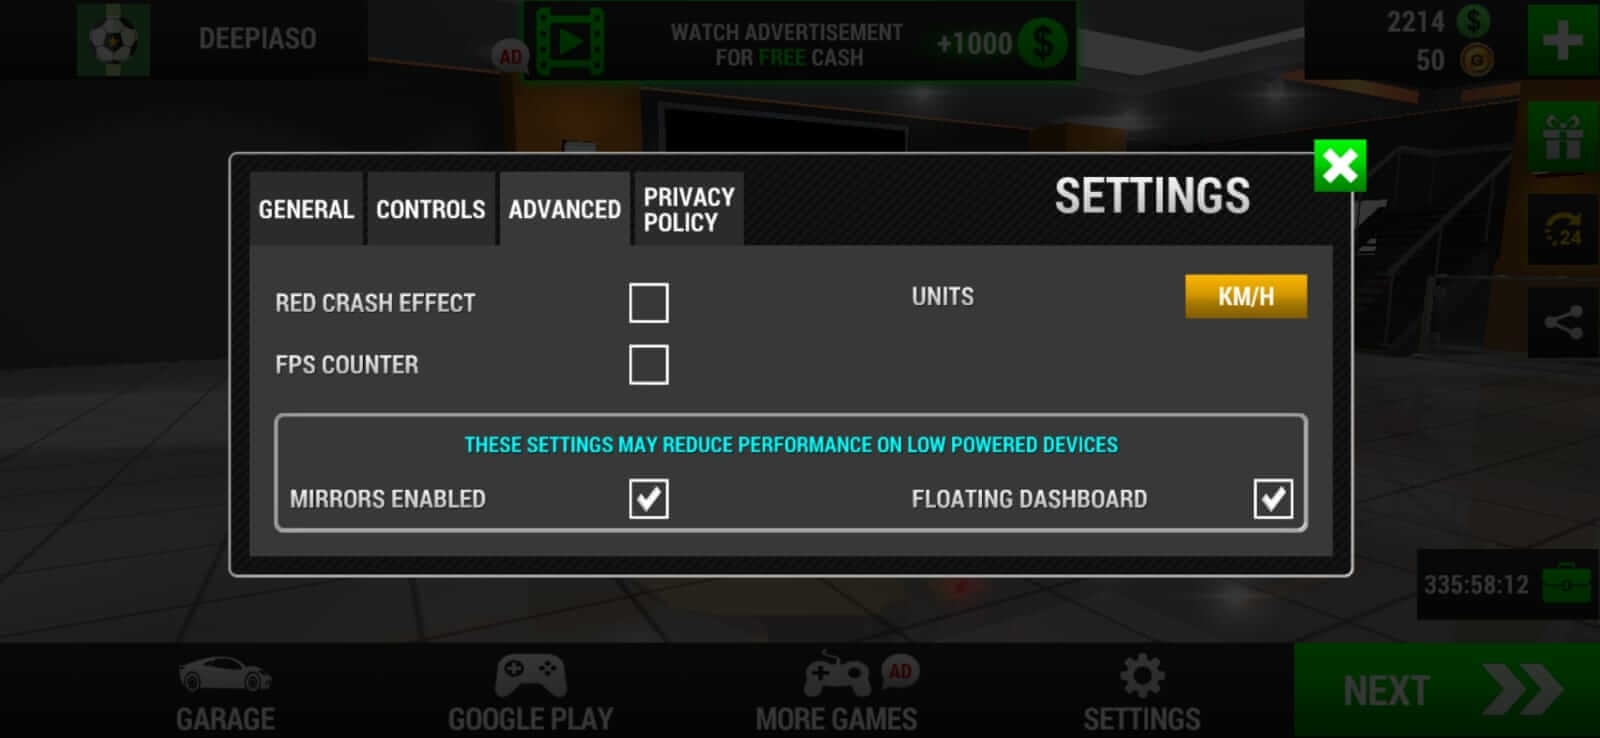 لقطة شاشة حدود السباق